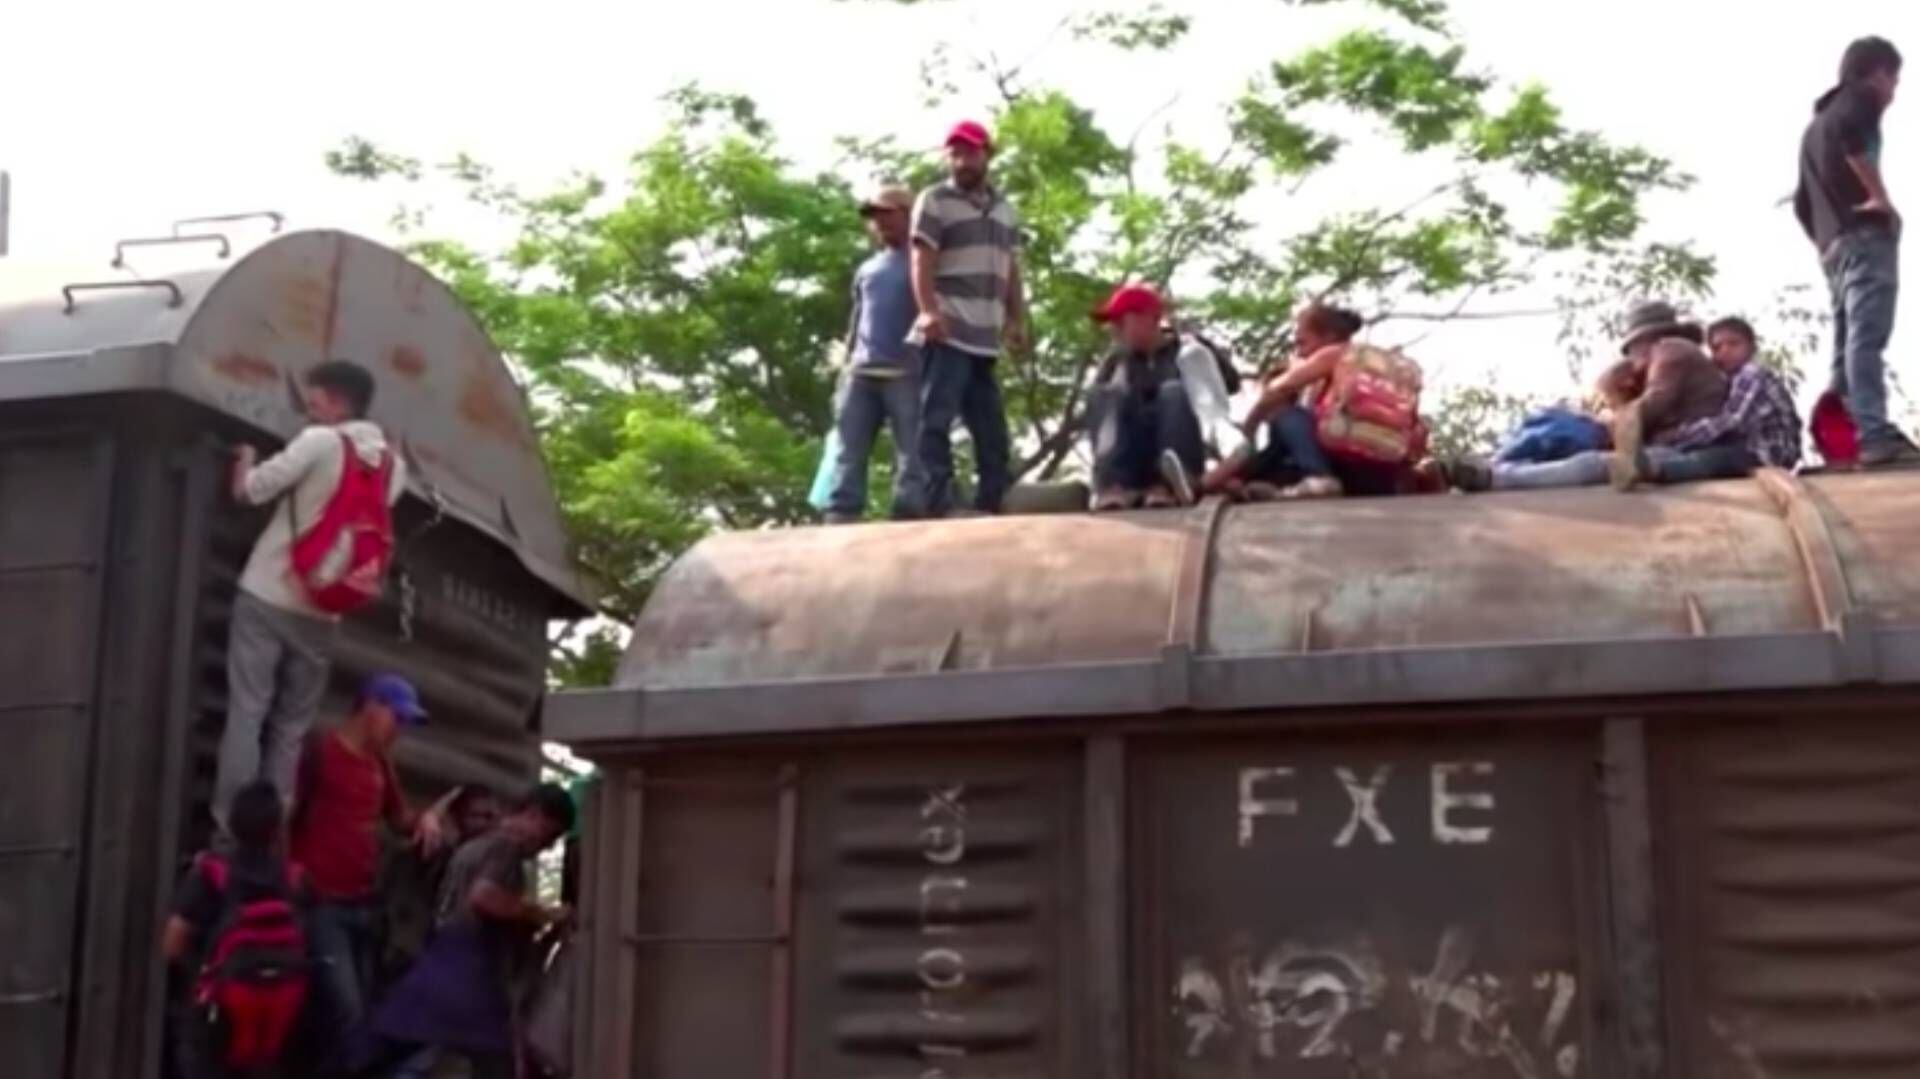 La Bestia es el nombre con el que se conoce el tren donde los migrantes viajan a través de México (Foto: YouTube)